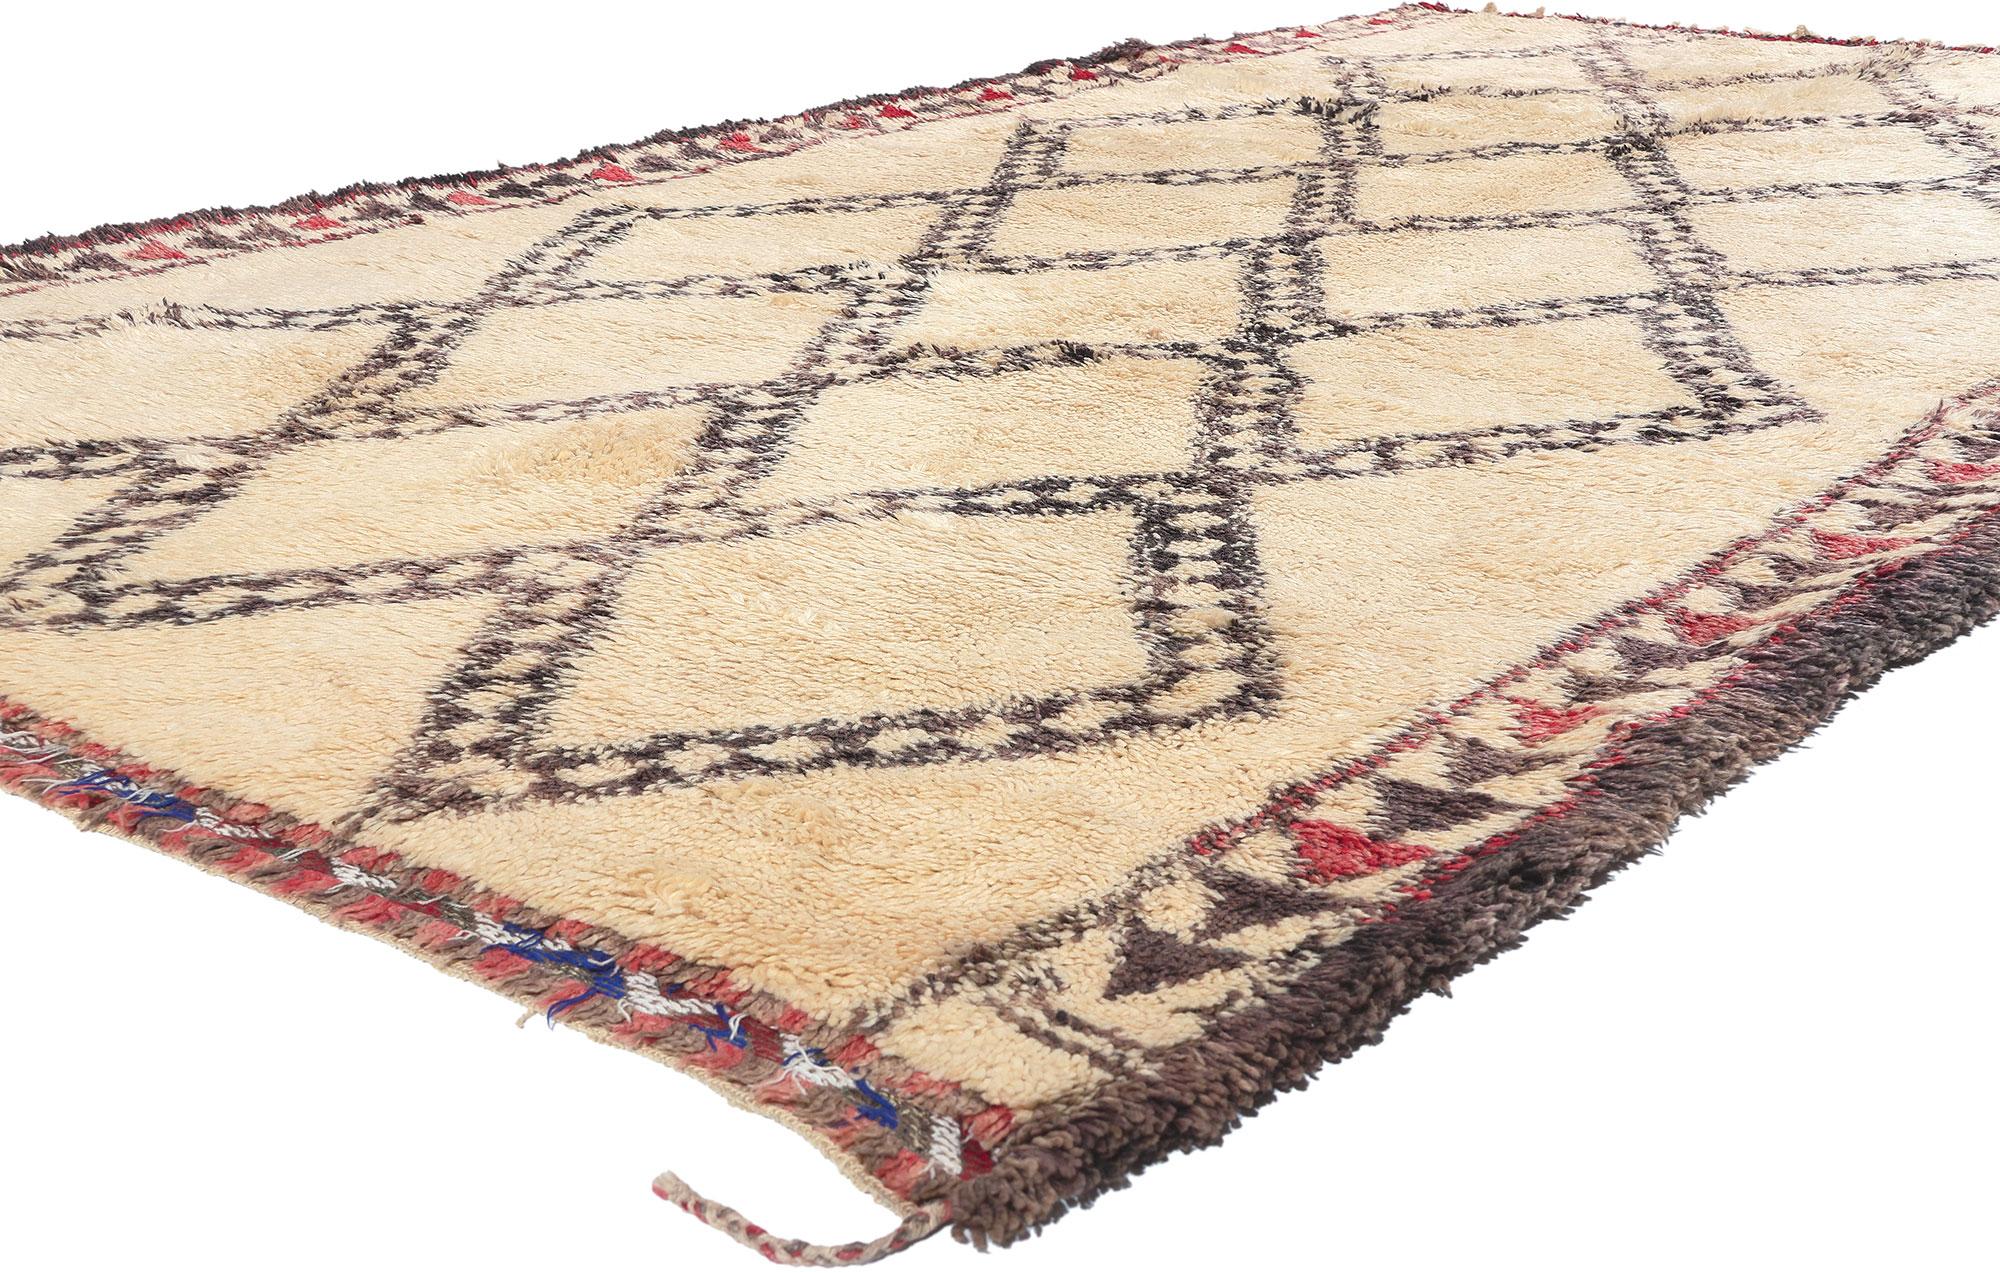 20771 Marokkanischer Vintage Beni Ourain Teppich, 06'03 x 11'00. Dieser handgeknüpfte marokkanische Beni Ourain-Teppich aus Wolle erinnert an den Charme des Midcentury Modern. Eine harmonische Verschmelzung von gemütlicher Nomadenästhetik und